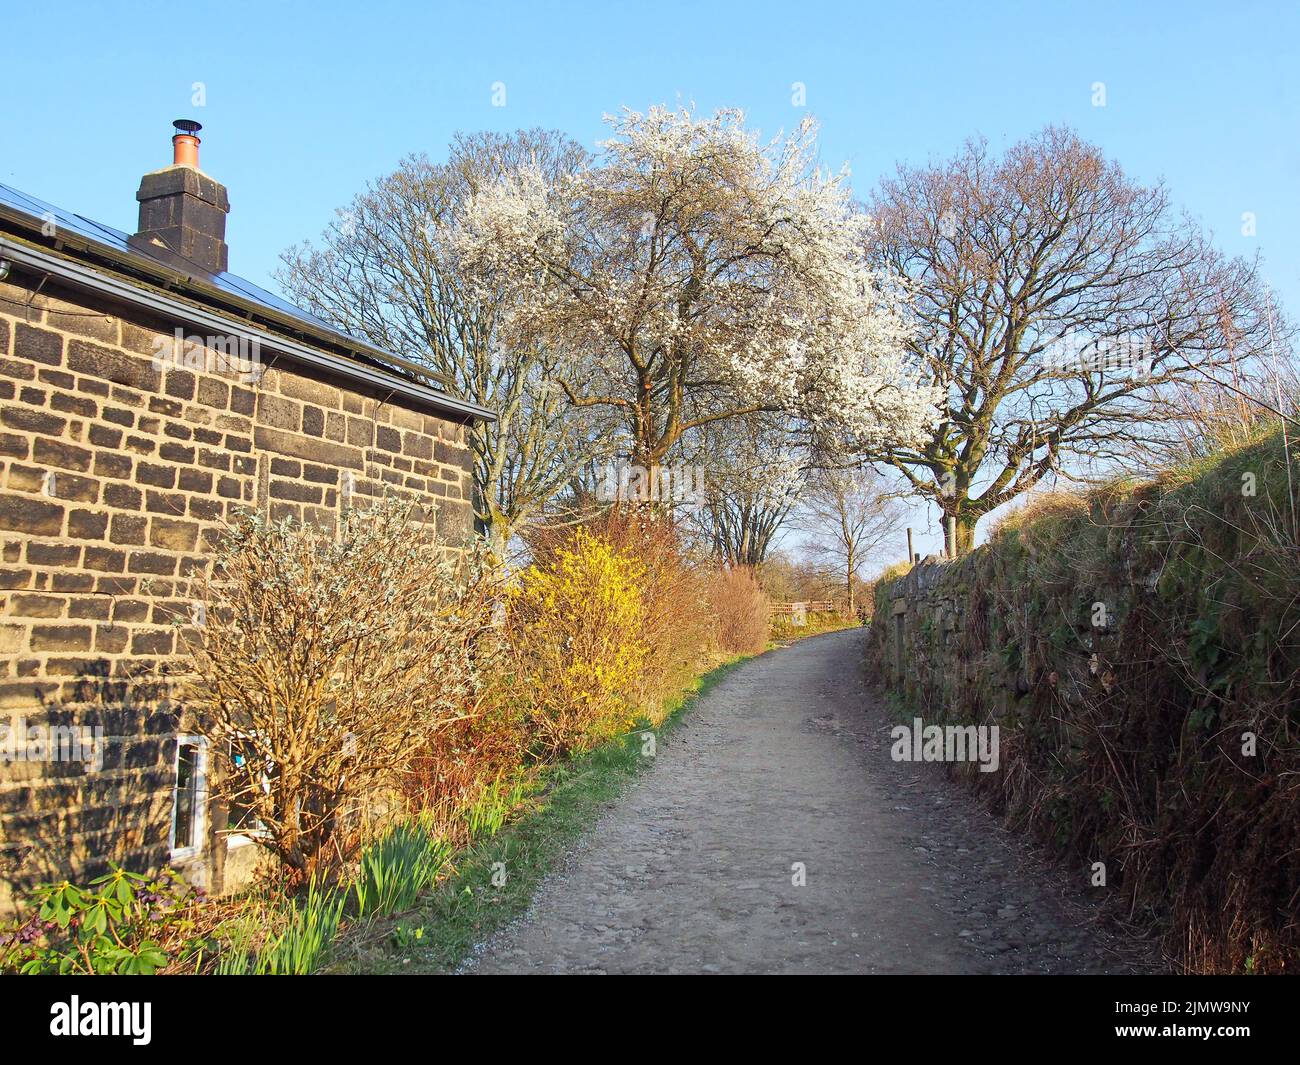 Vista lungo la stretta strada di campagna circondata da una casa colonica e muro di pietra con germoglianti cespugli primaverili e alberi in fiore con a s. Foto Stock